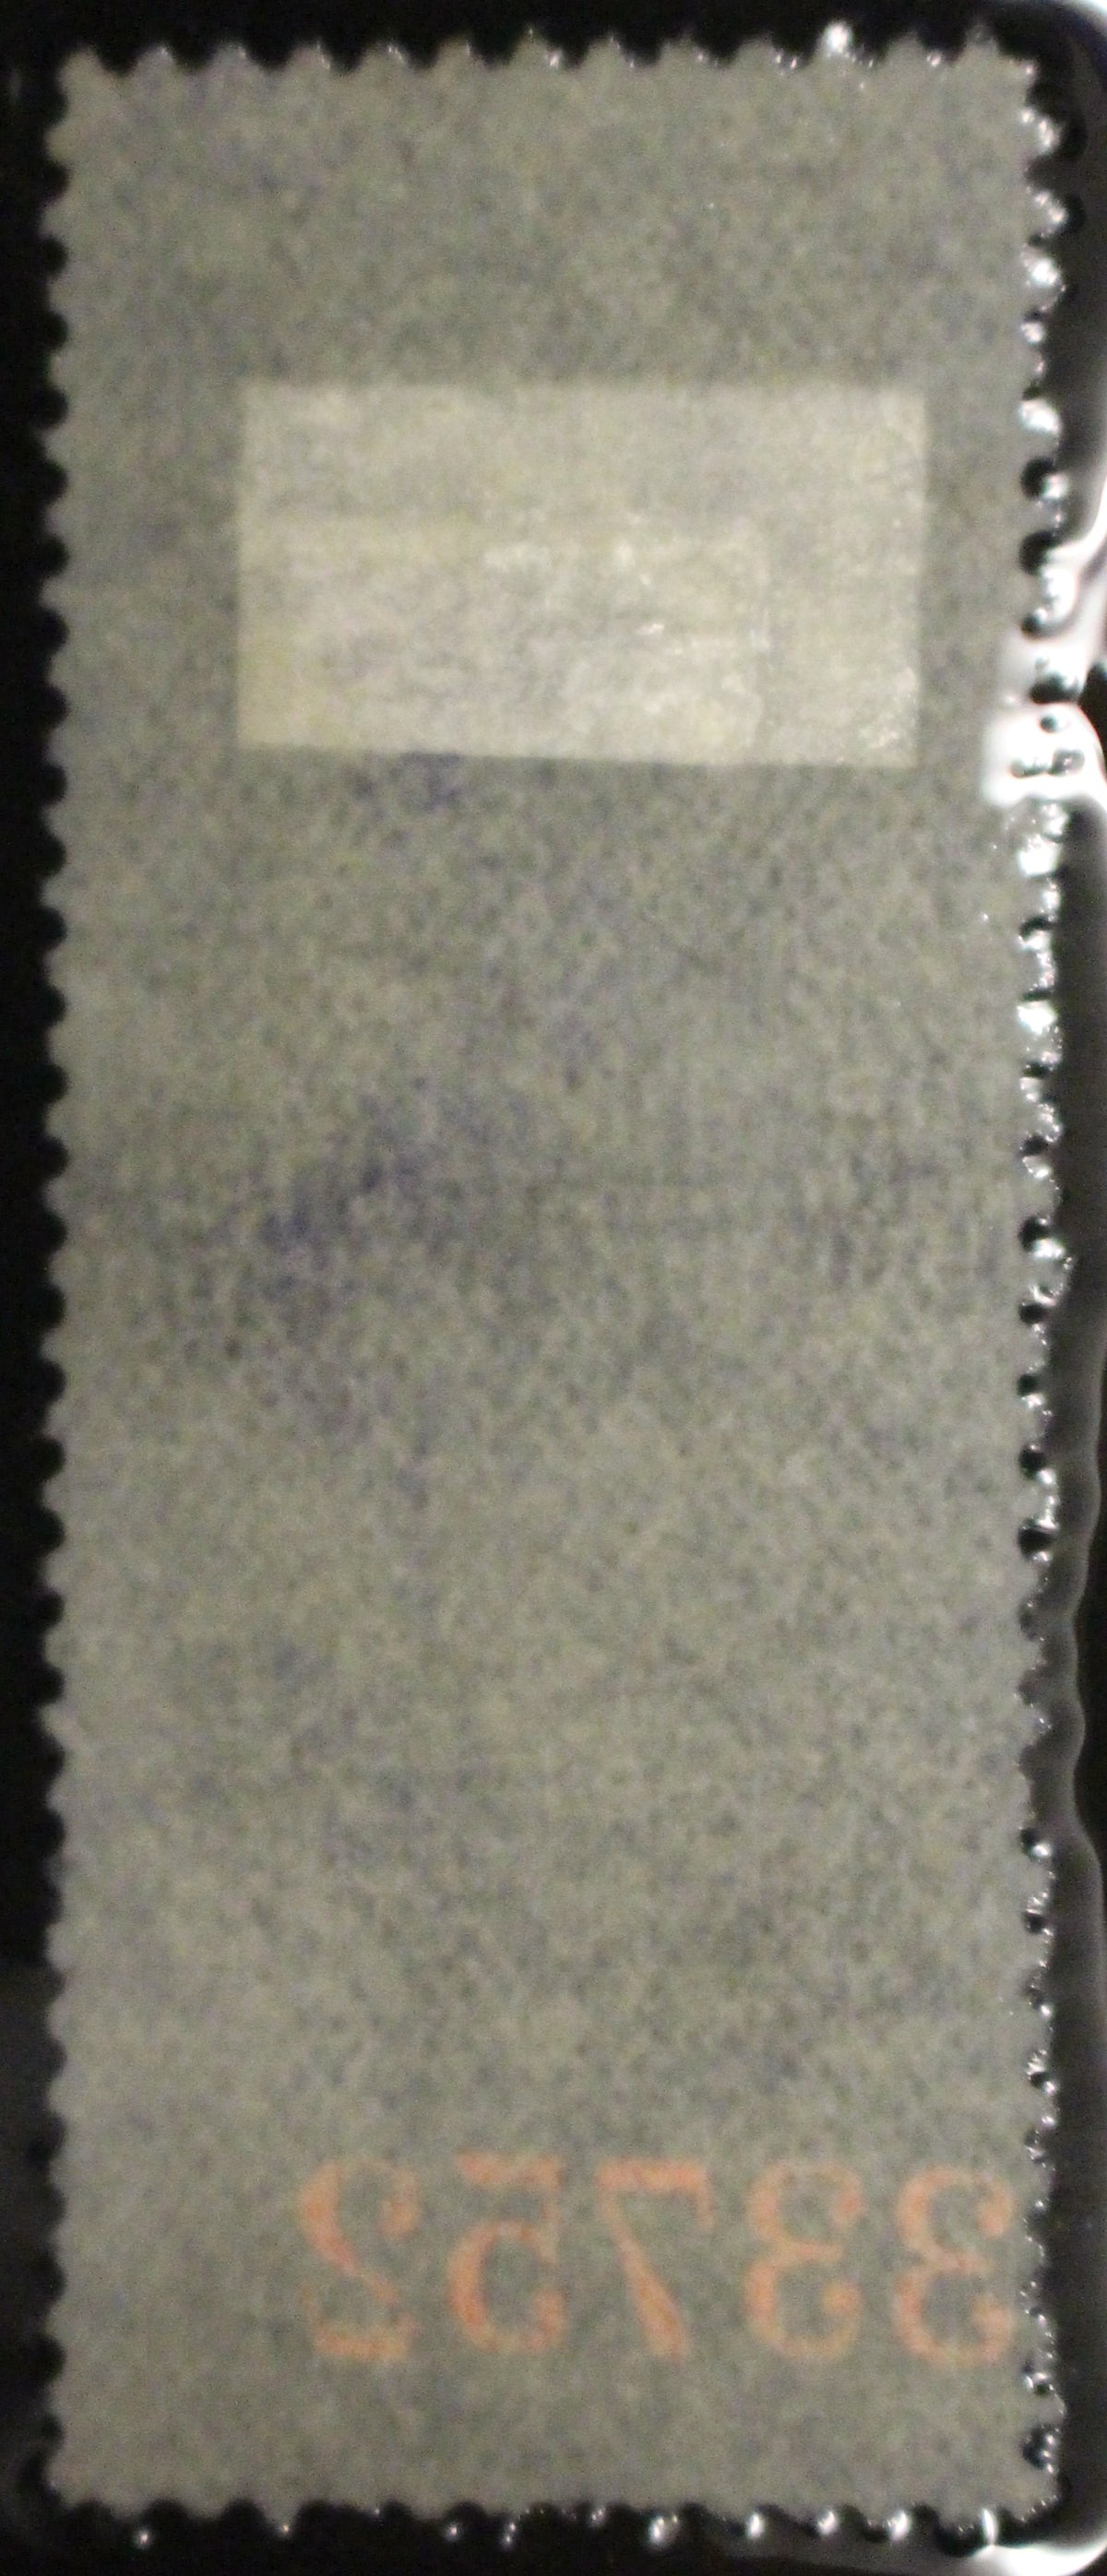 0040WM2010 - FWM40 - Used, UNLISTED Stitch Watermark